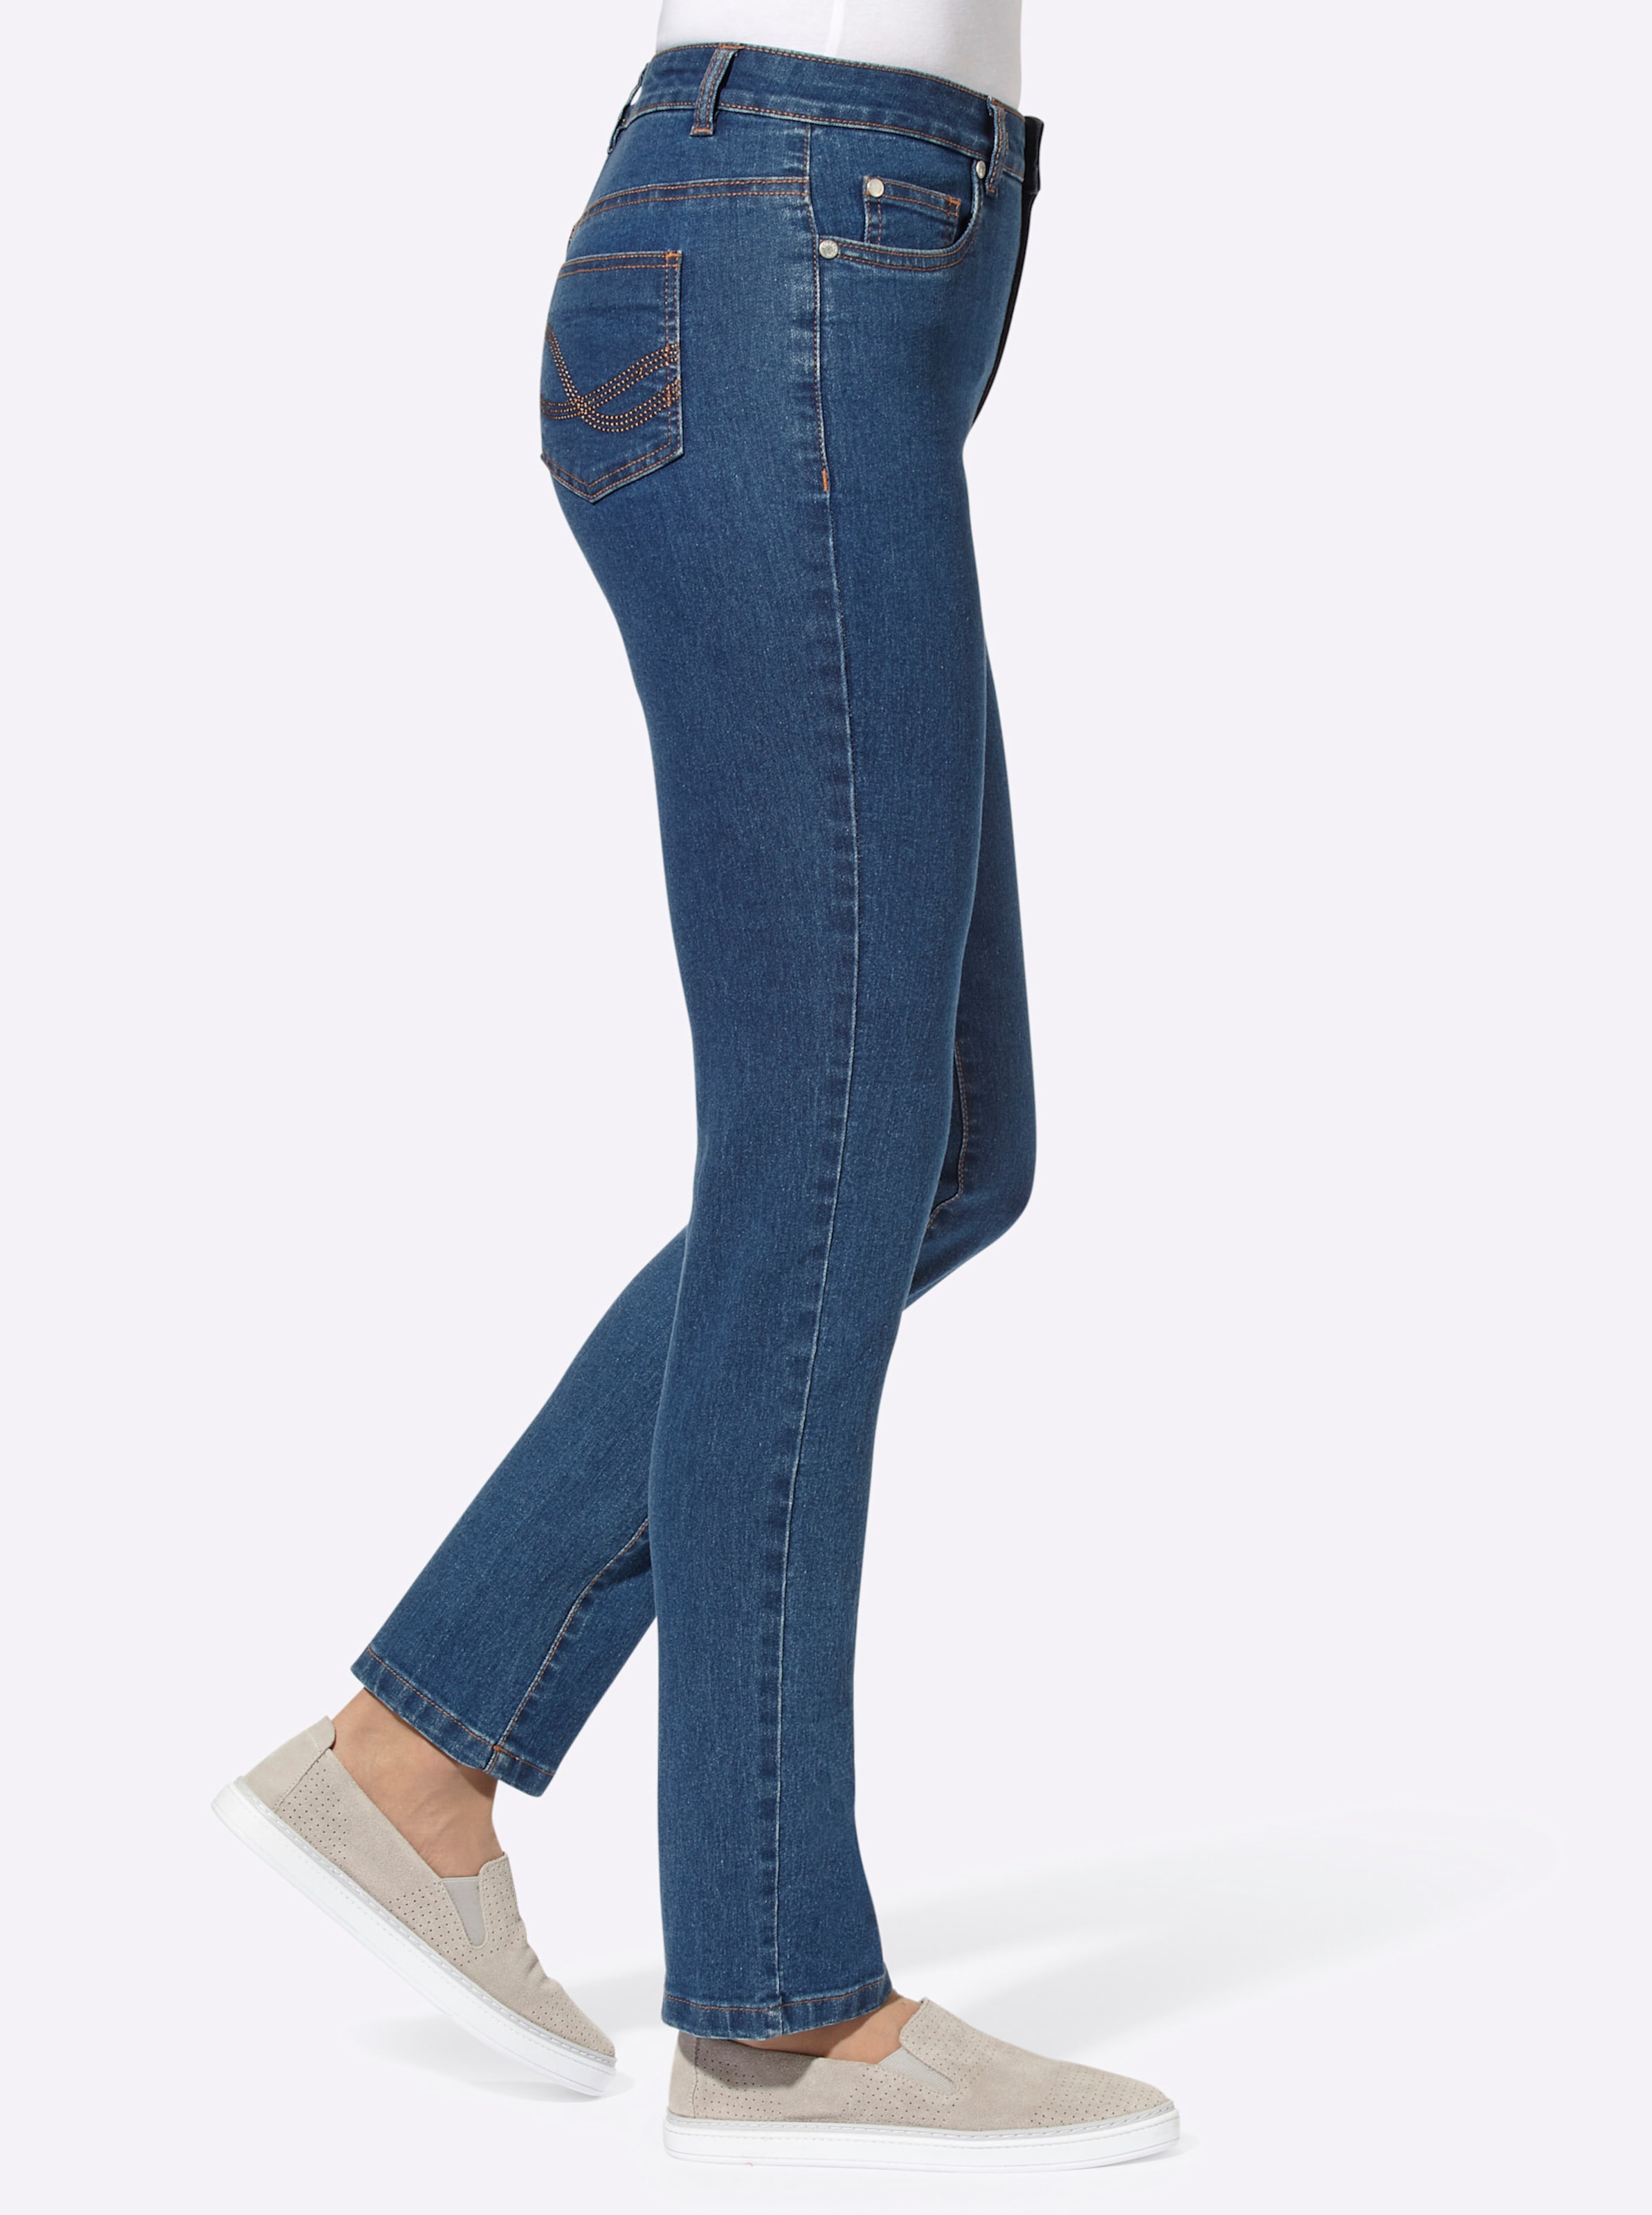 Dank Der günstig Kaufen-5-Pocket-Jeans in blue-stone-washed von heine. 5-Pocket-Jeans in blue-stone-washed von heine <![CDATA[Sitzt optimal dank Stretch! Schmal geschnittene Jeans in der typischen 5-Pocket-Form mit Ziernieten an den Taschen. Gürtelschlaufen sowie Knopf- und Rei